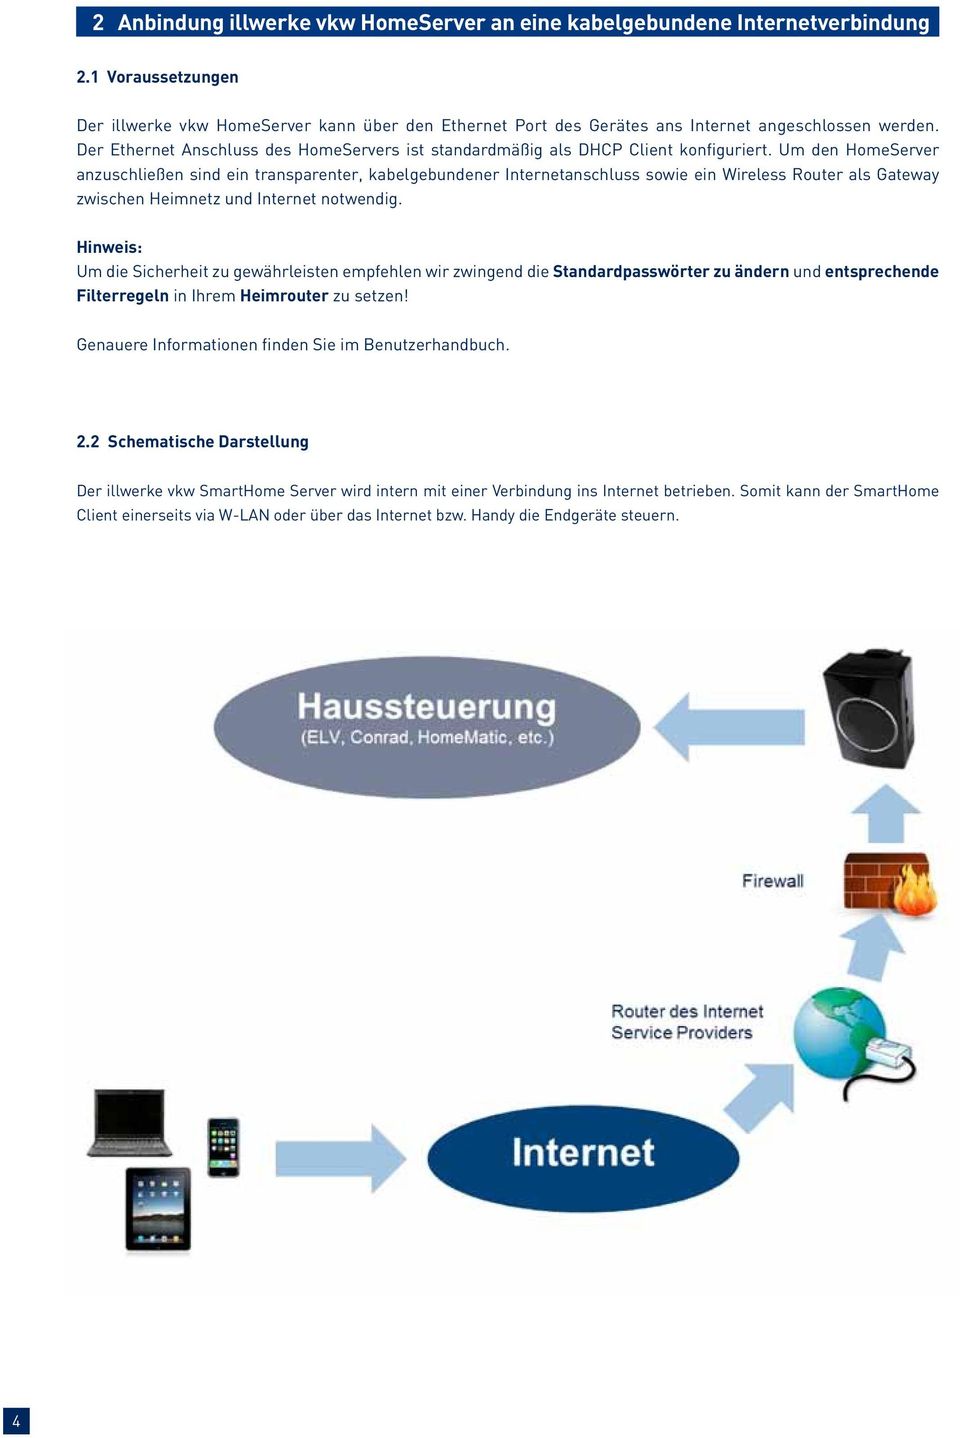 Um den HomeServer anzuschließen sind ein transparenter, kabelgebundener Internetanschluss sowie ein Wireless Router als Gateway zwischen Heimnetz und Internet notwendig.